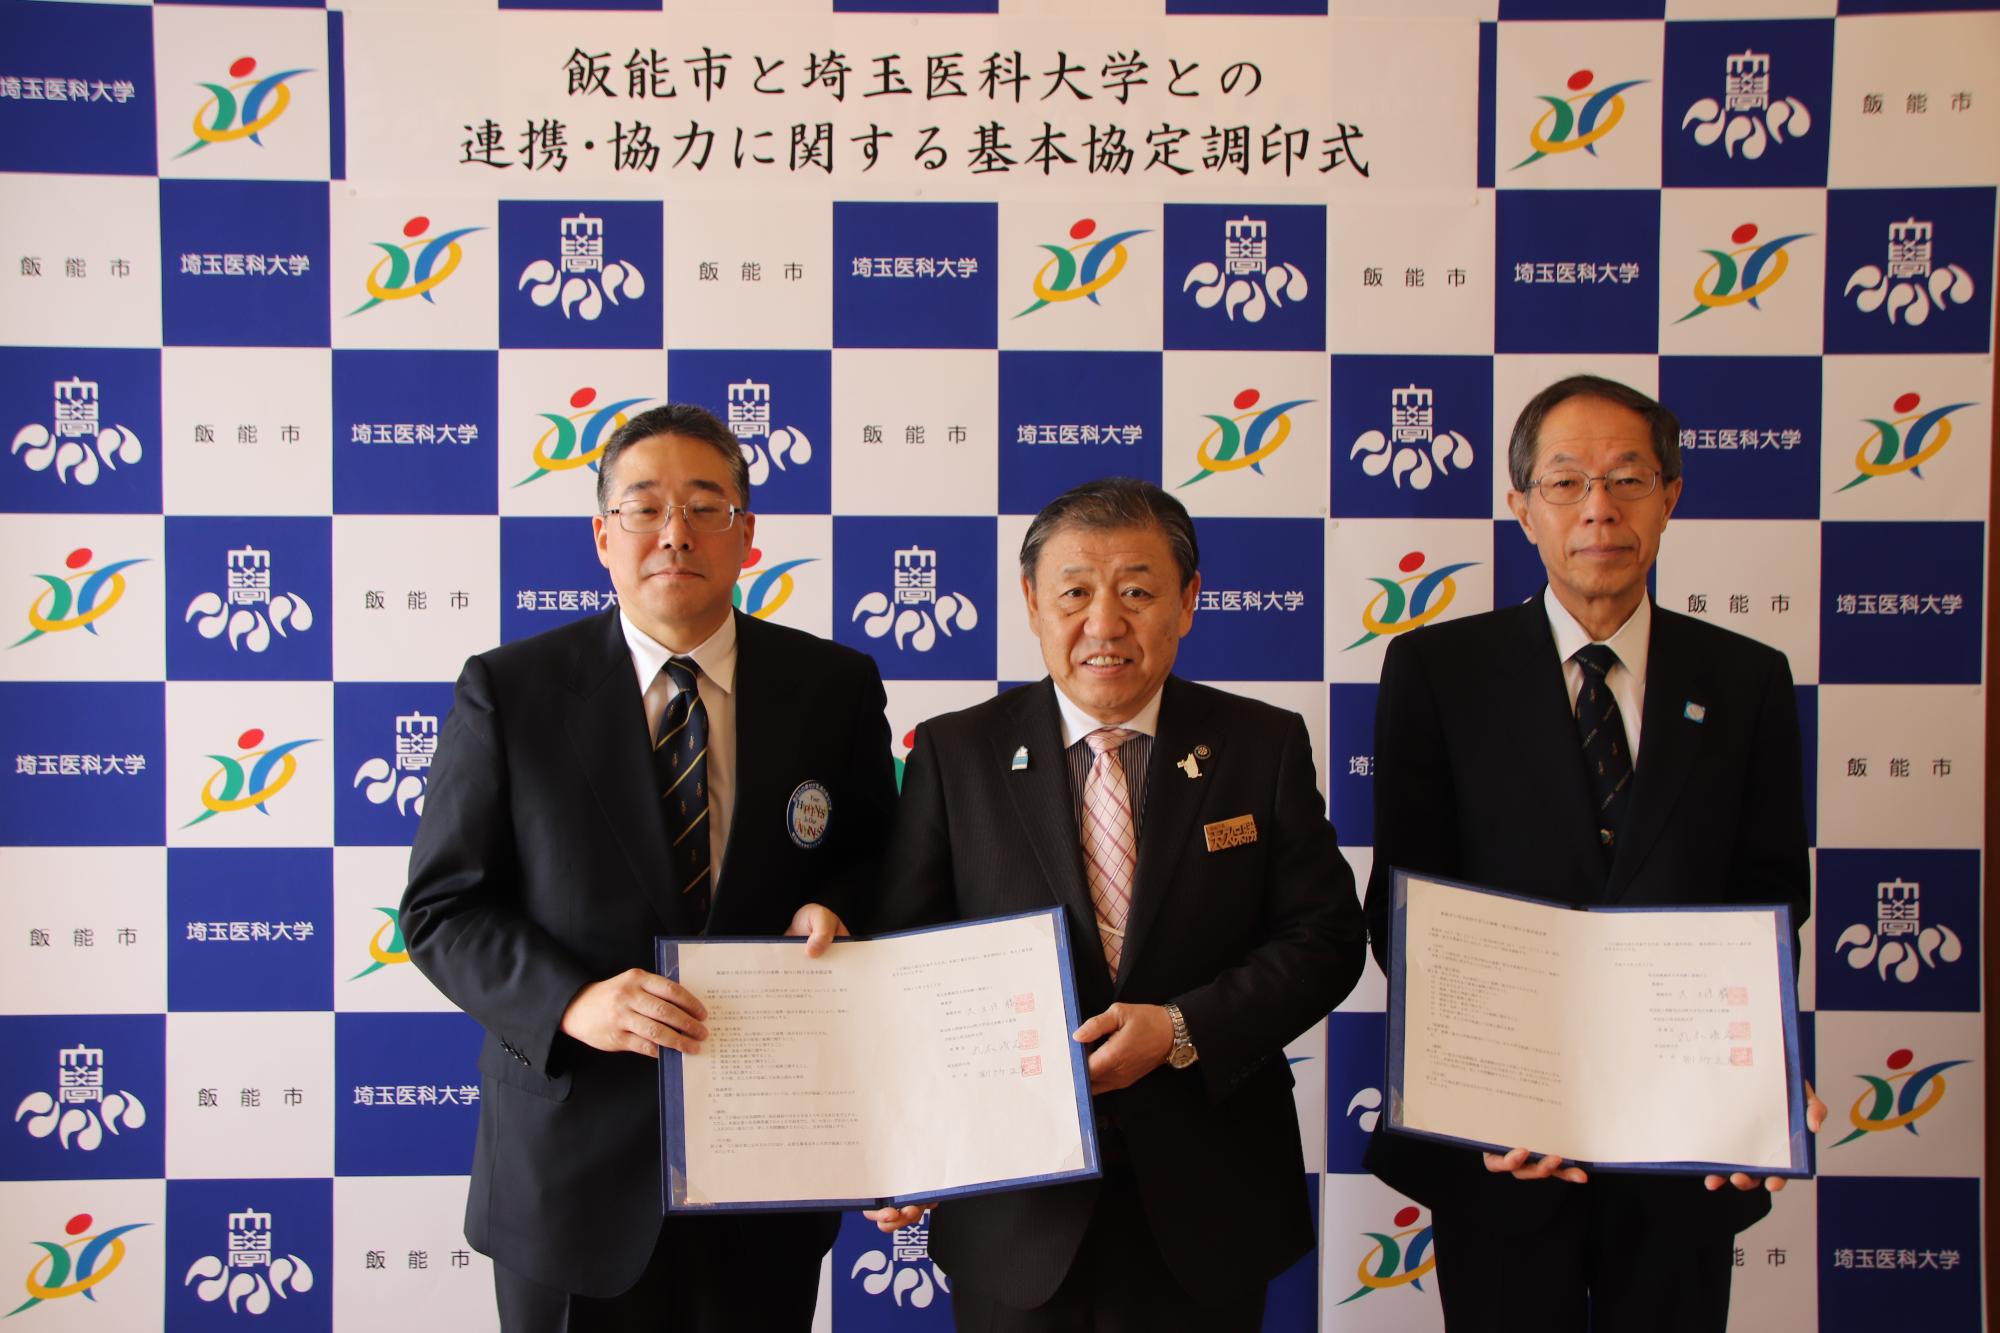 市長と埼玉医科大学理事長、埼玉医科大学学長が協定書を手に持ち並んで撮影している写真